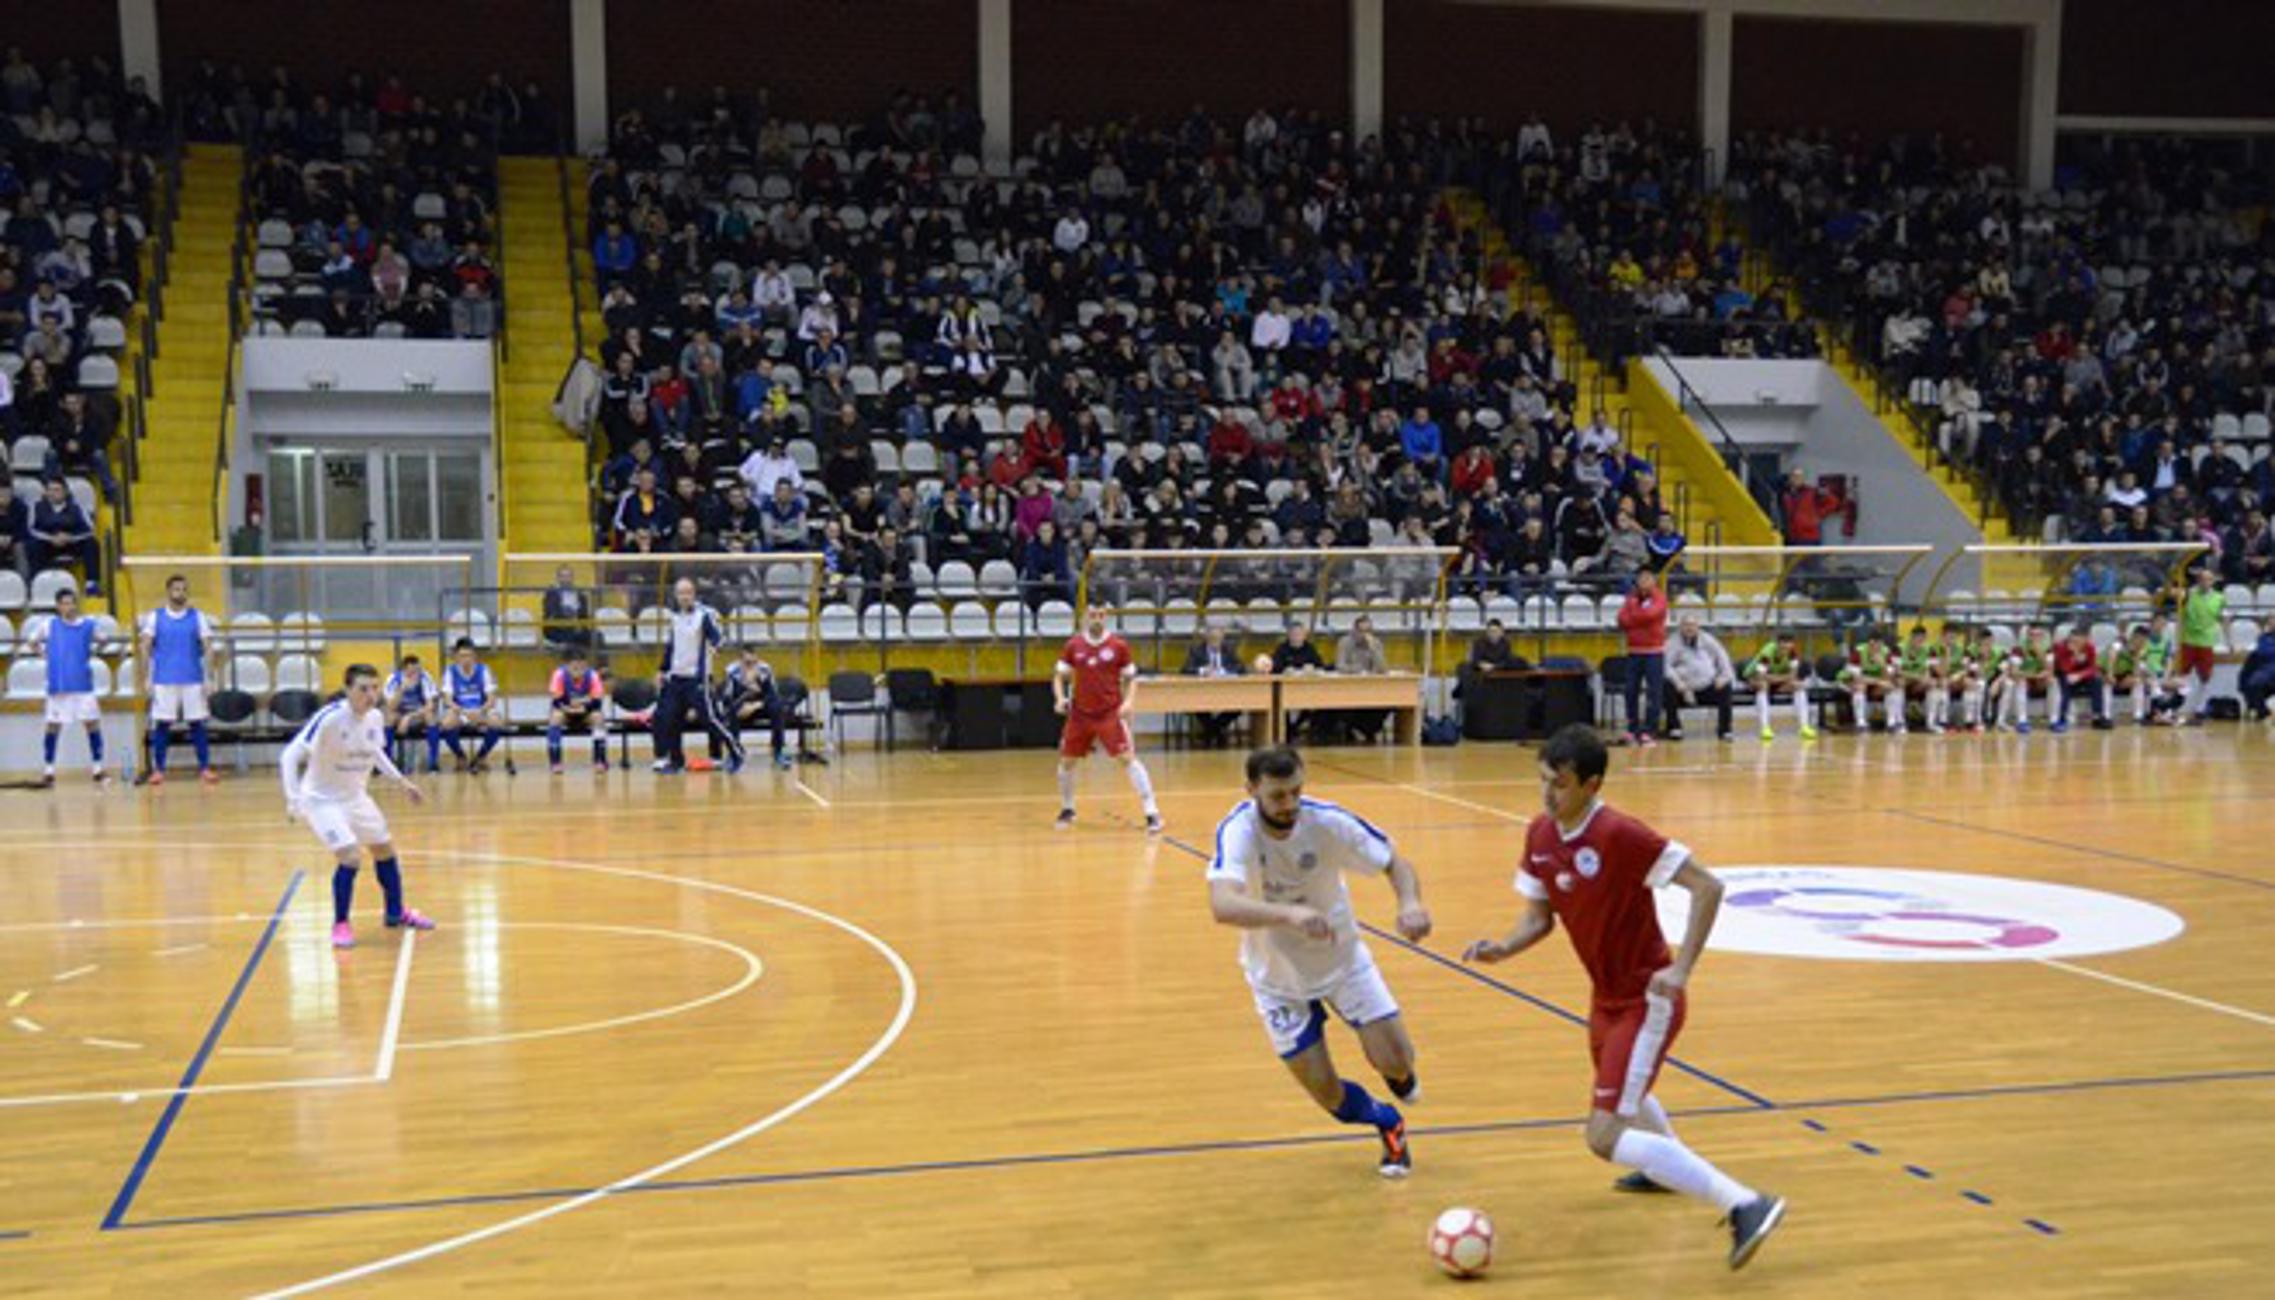 Detalj iz večerašnje utakmice između Brođana (crveni) i Osječana